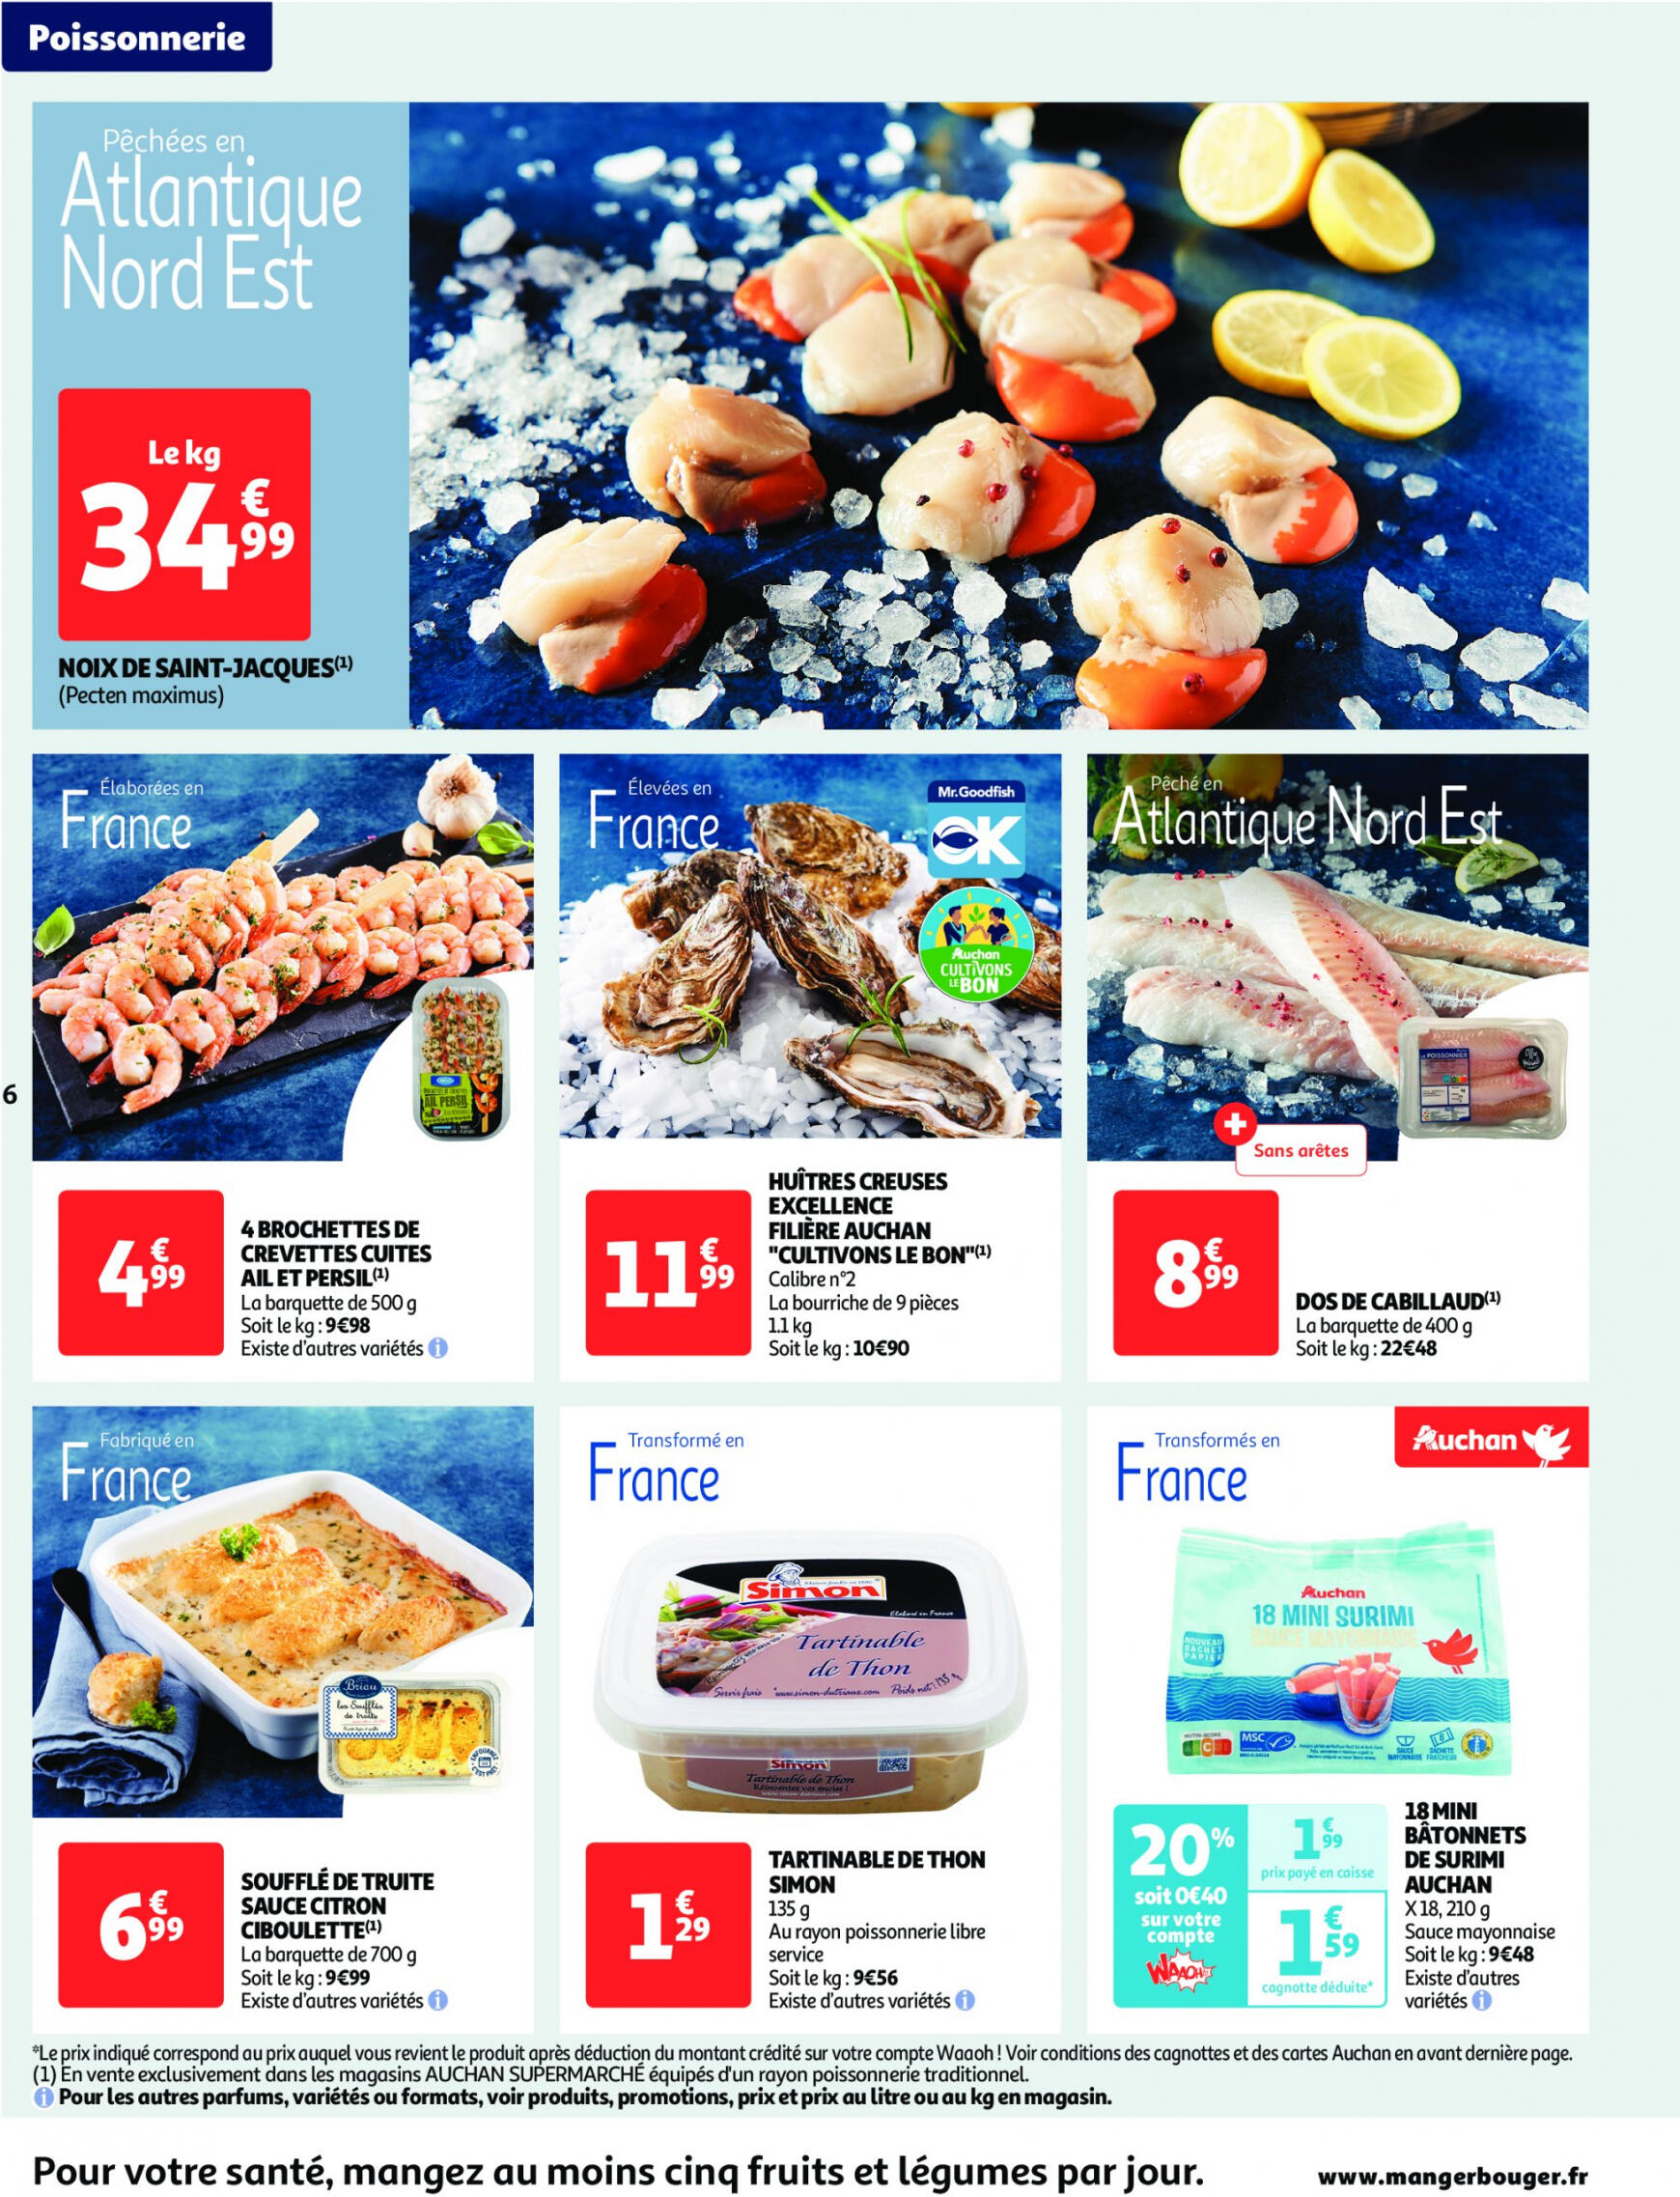 auchan - Auchan supermarché - Faites le plein de bonnes affaires folder huidig 22.05. - 26.05. - page: 6